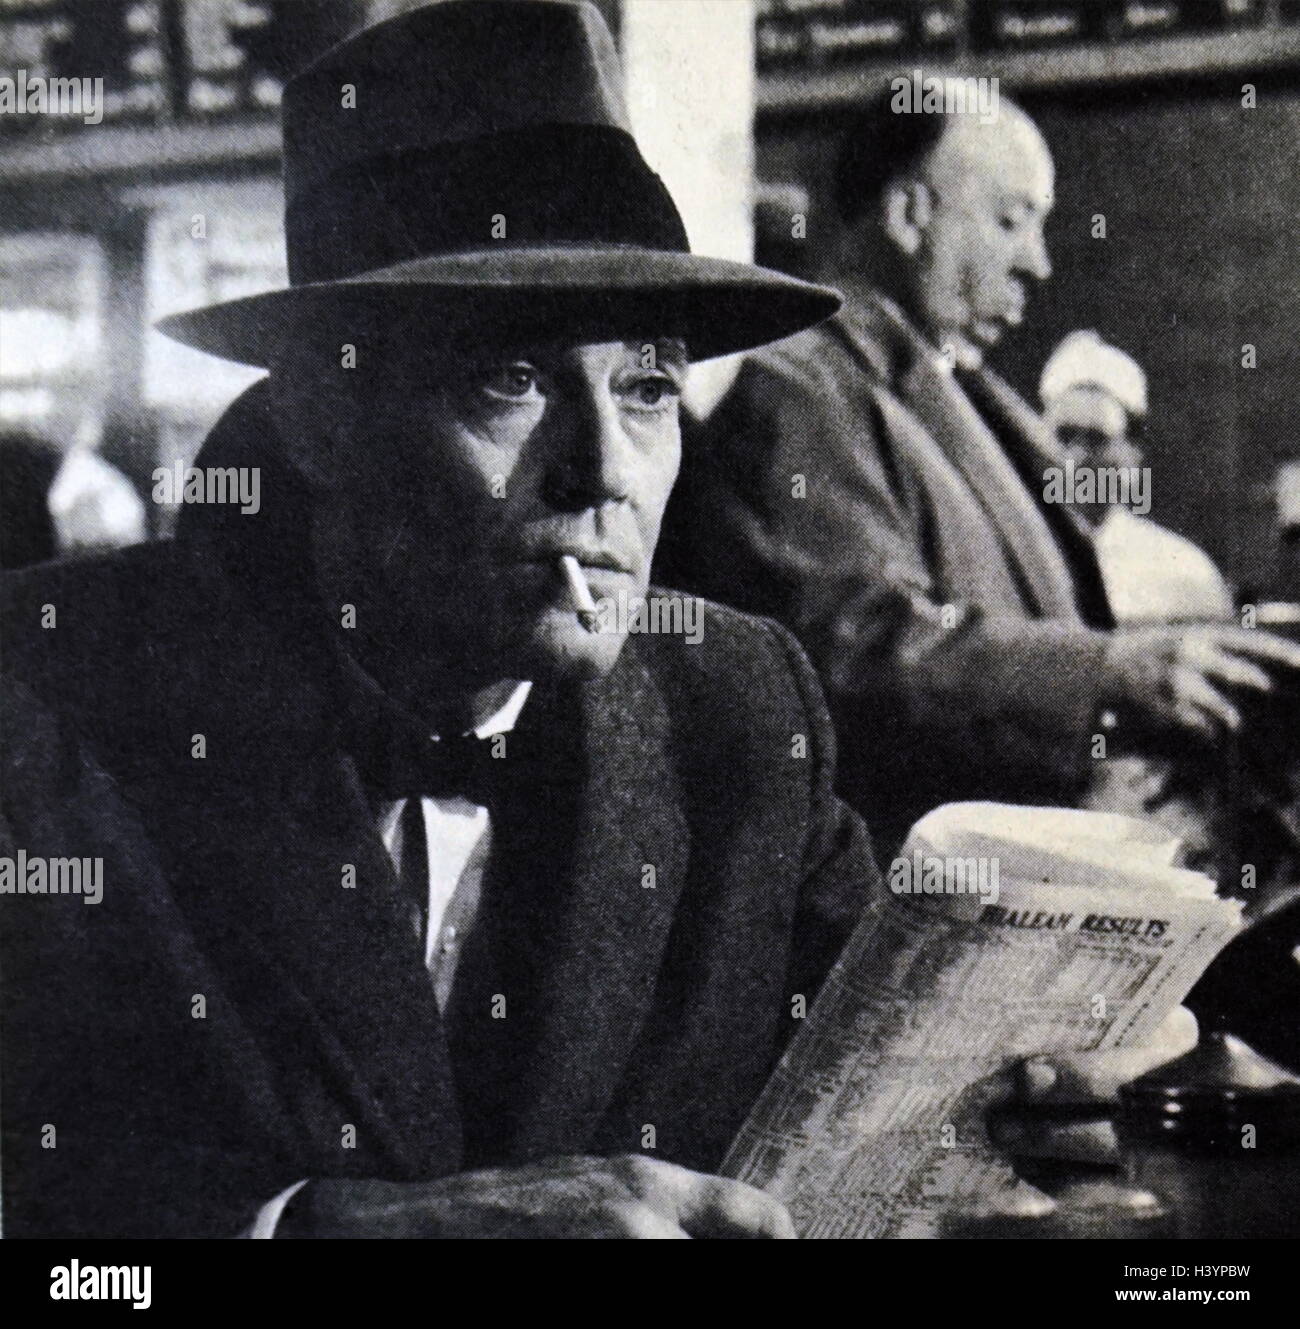 Film still aus "The Wrong Man" von Henry Fonda (1905 – 1982), ein US-amerikanischer Film und Stadium Schauspieler. Vom 20. Jahrhundert Stockfoto